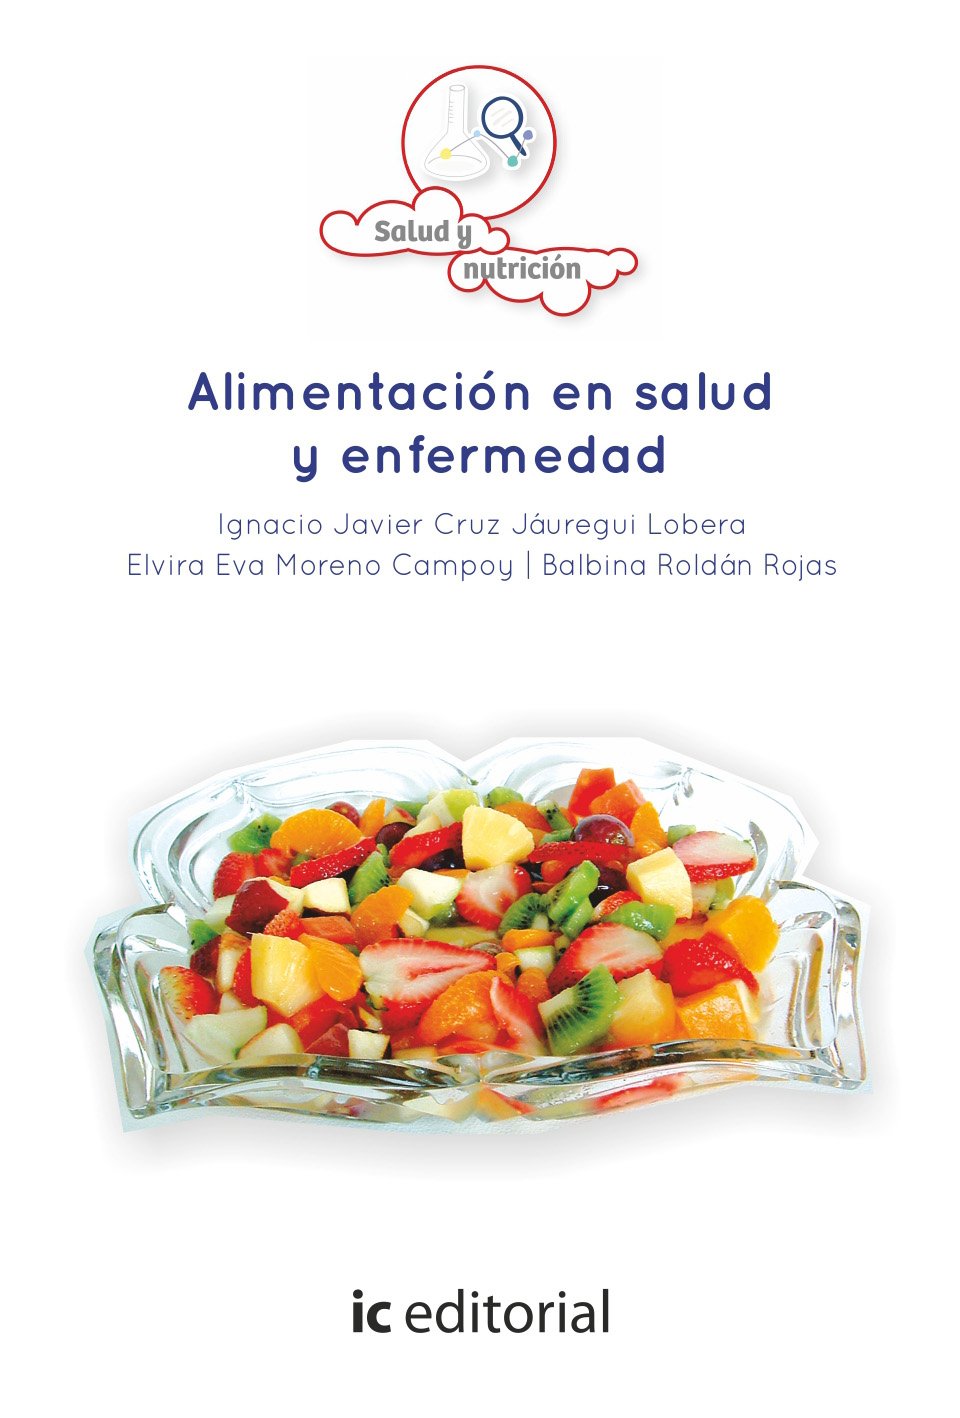 Imagen de portada del libro Alimentación en salud y enfermedad